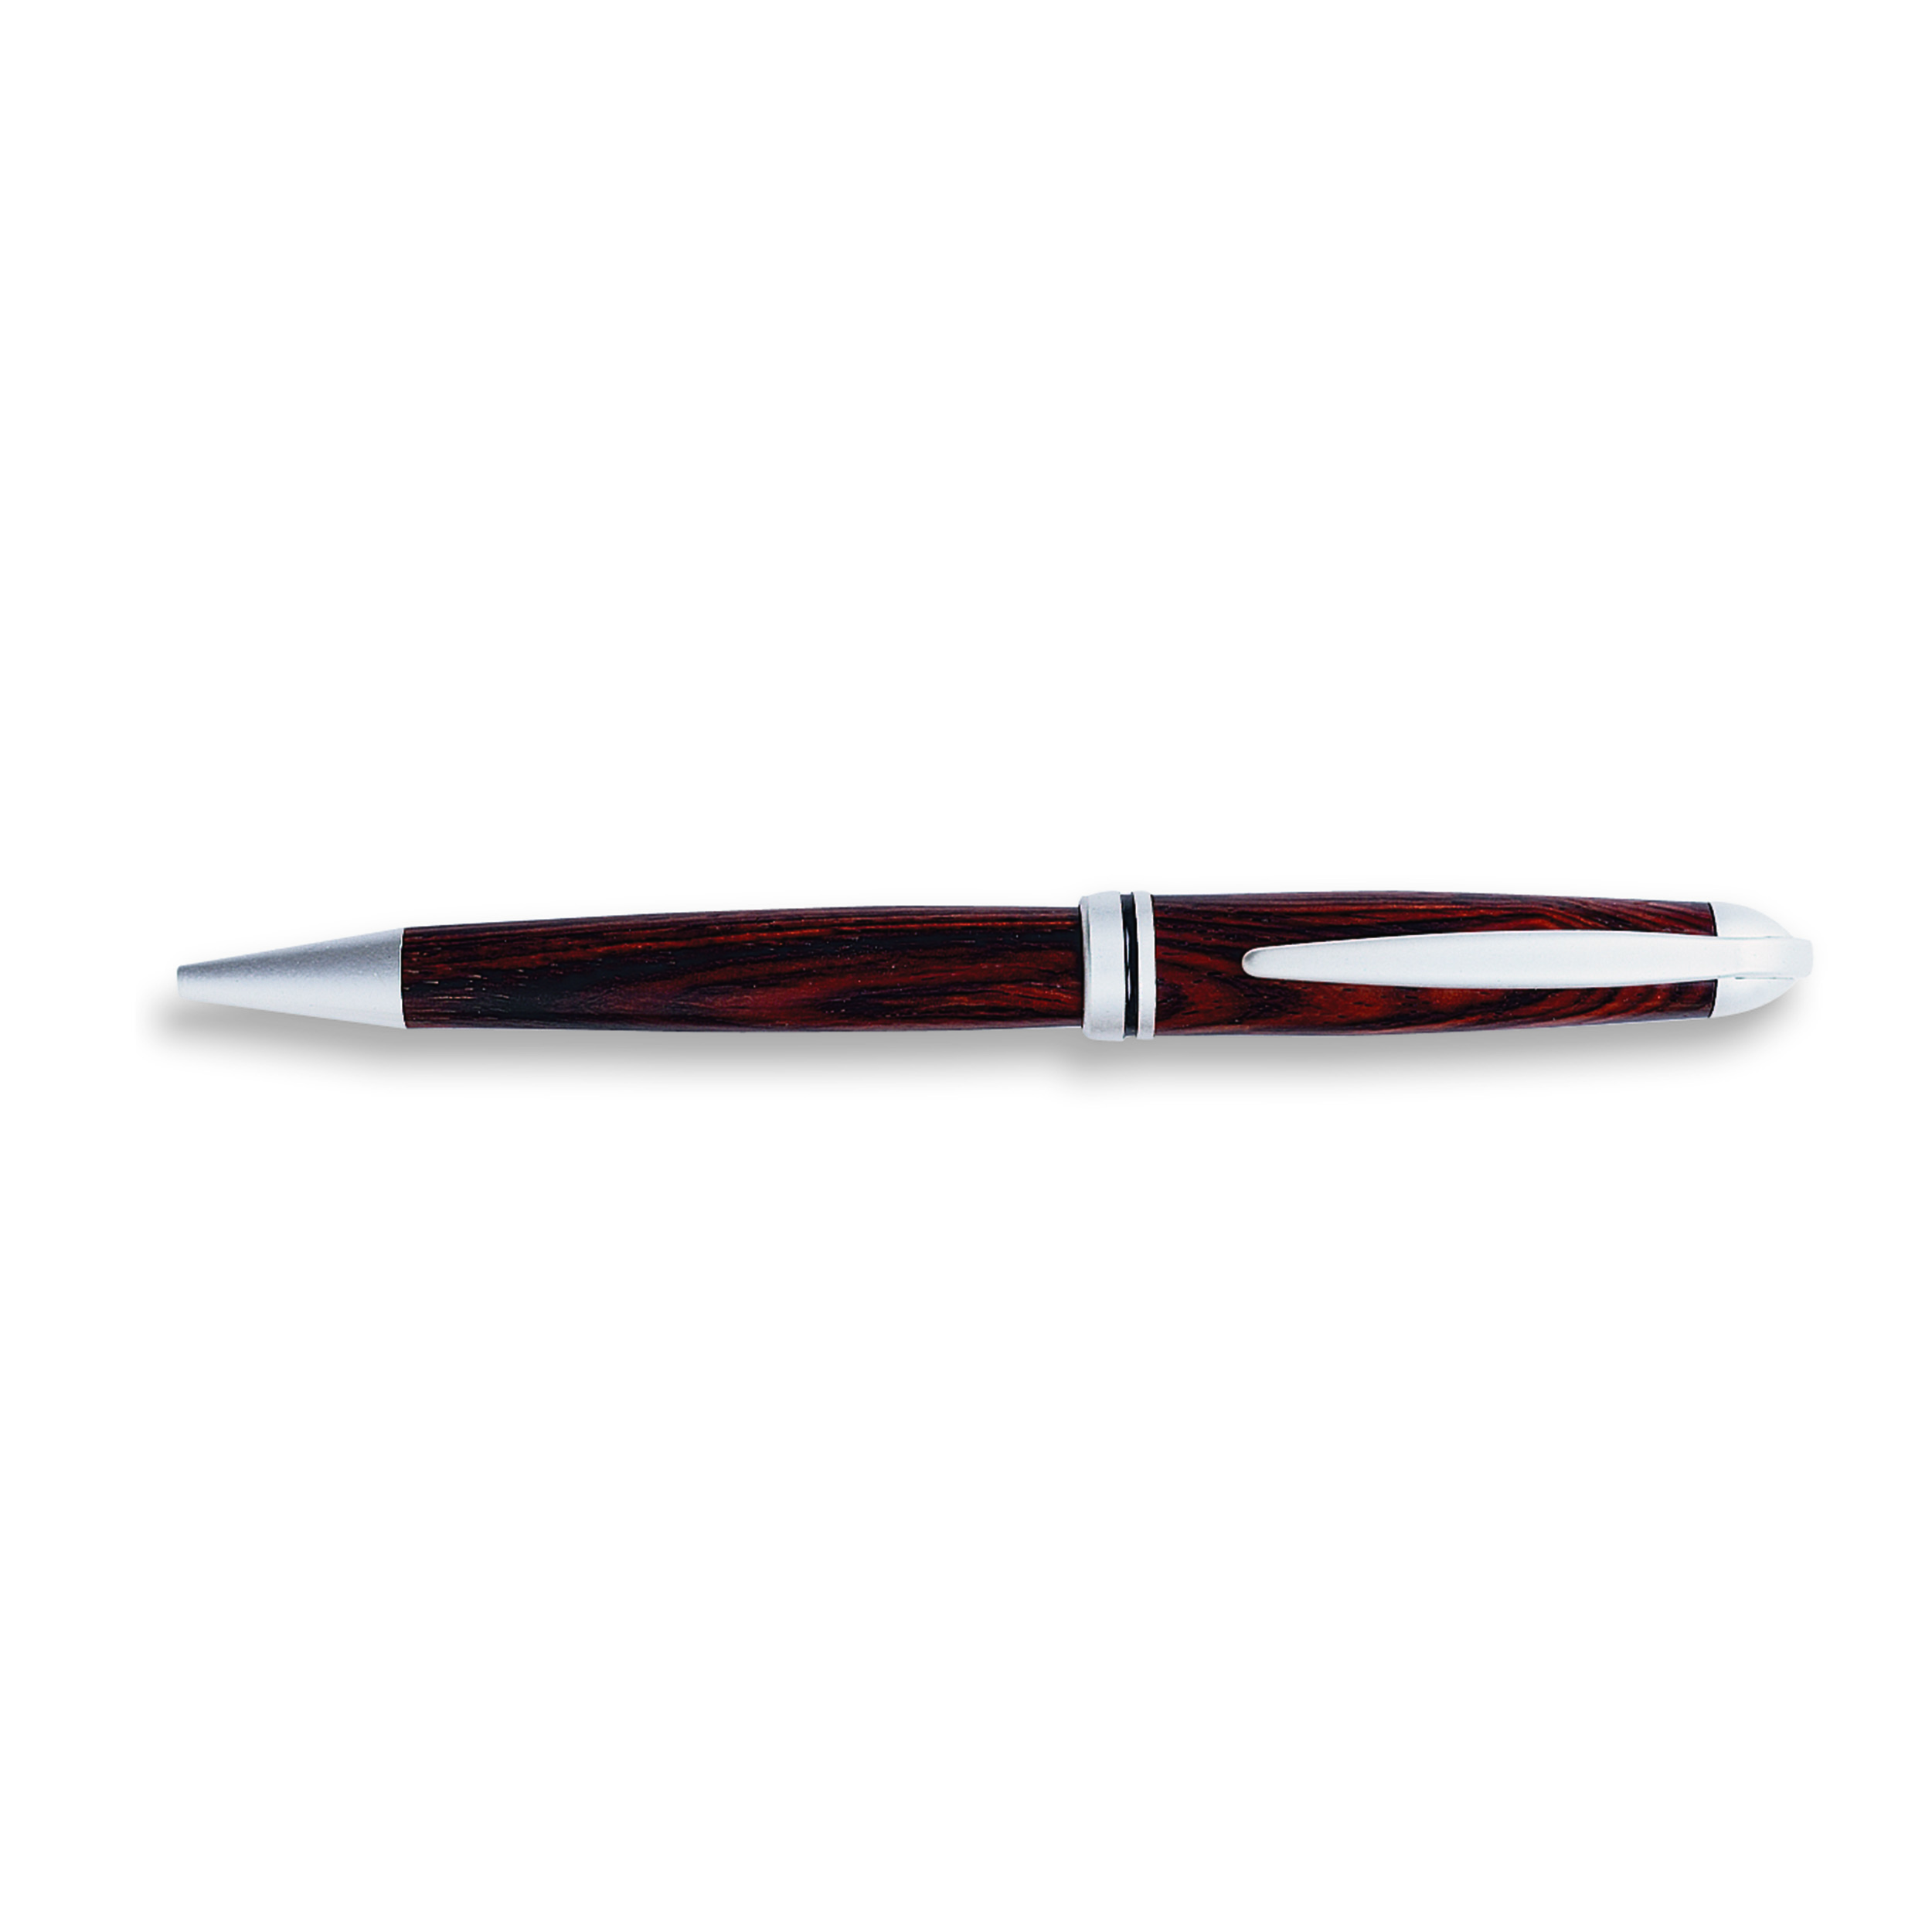 European Style Ballpoint Pen Kit With Deco Spring- Satin Nickel